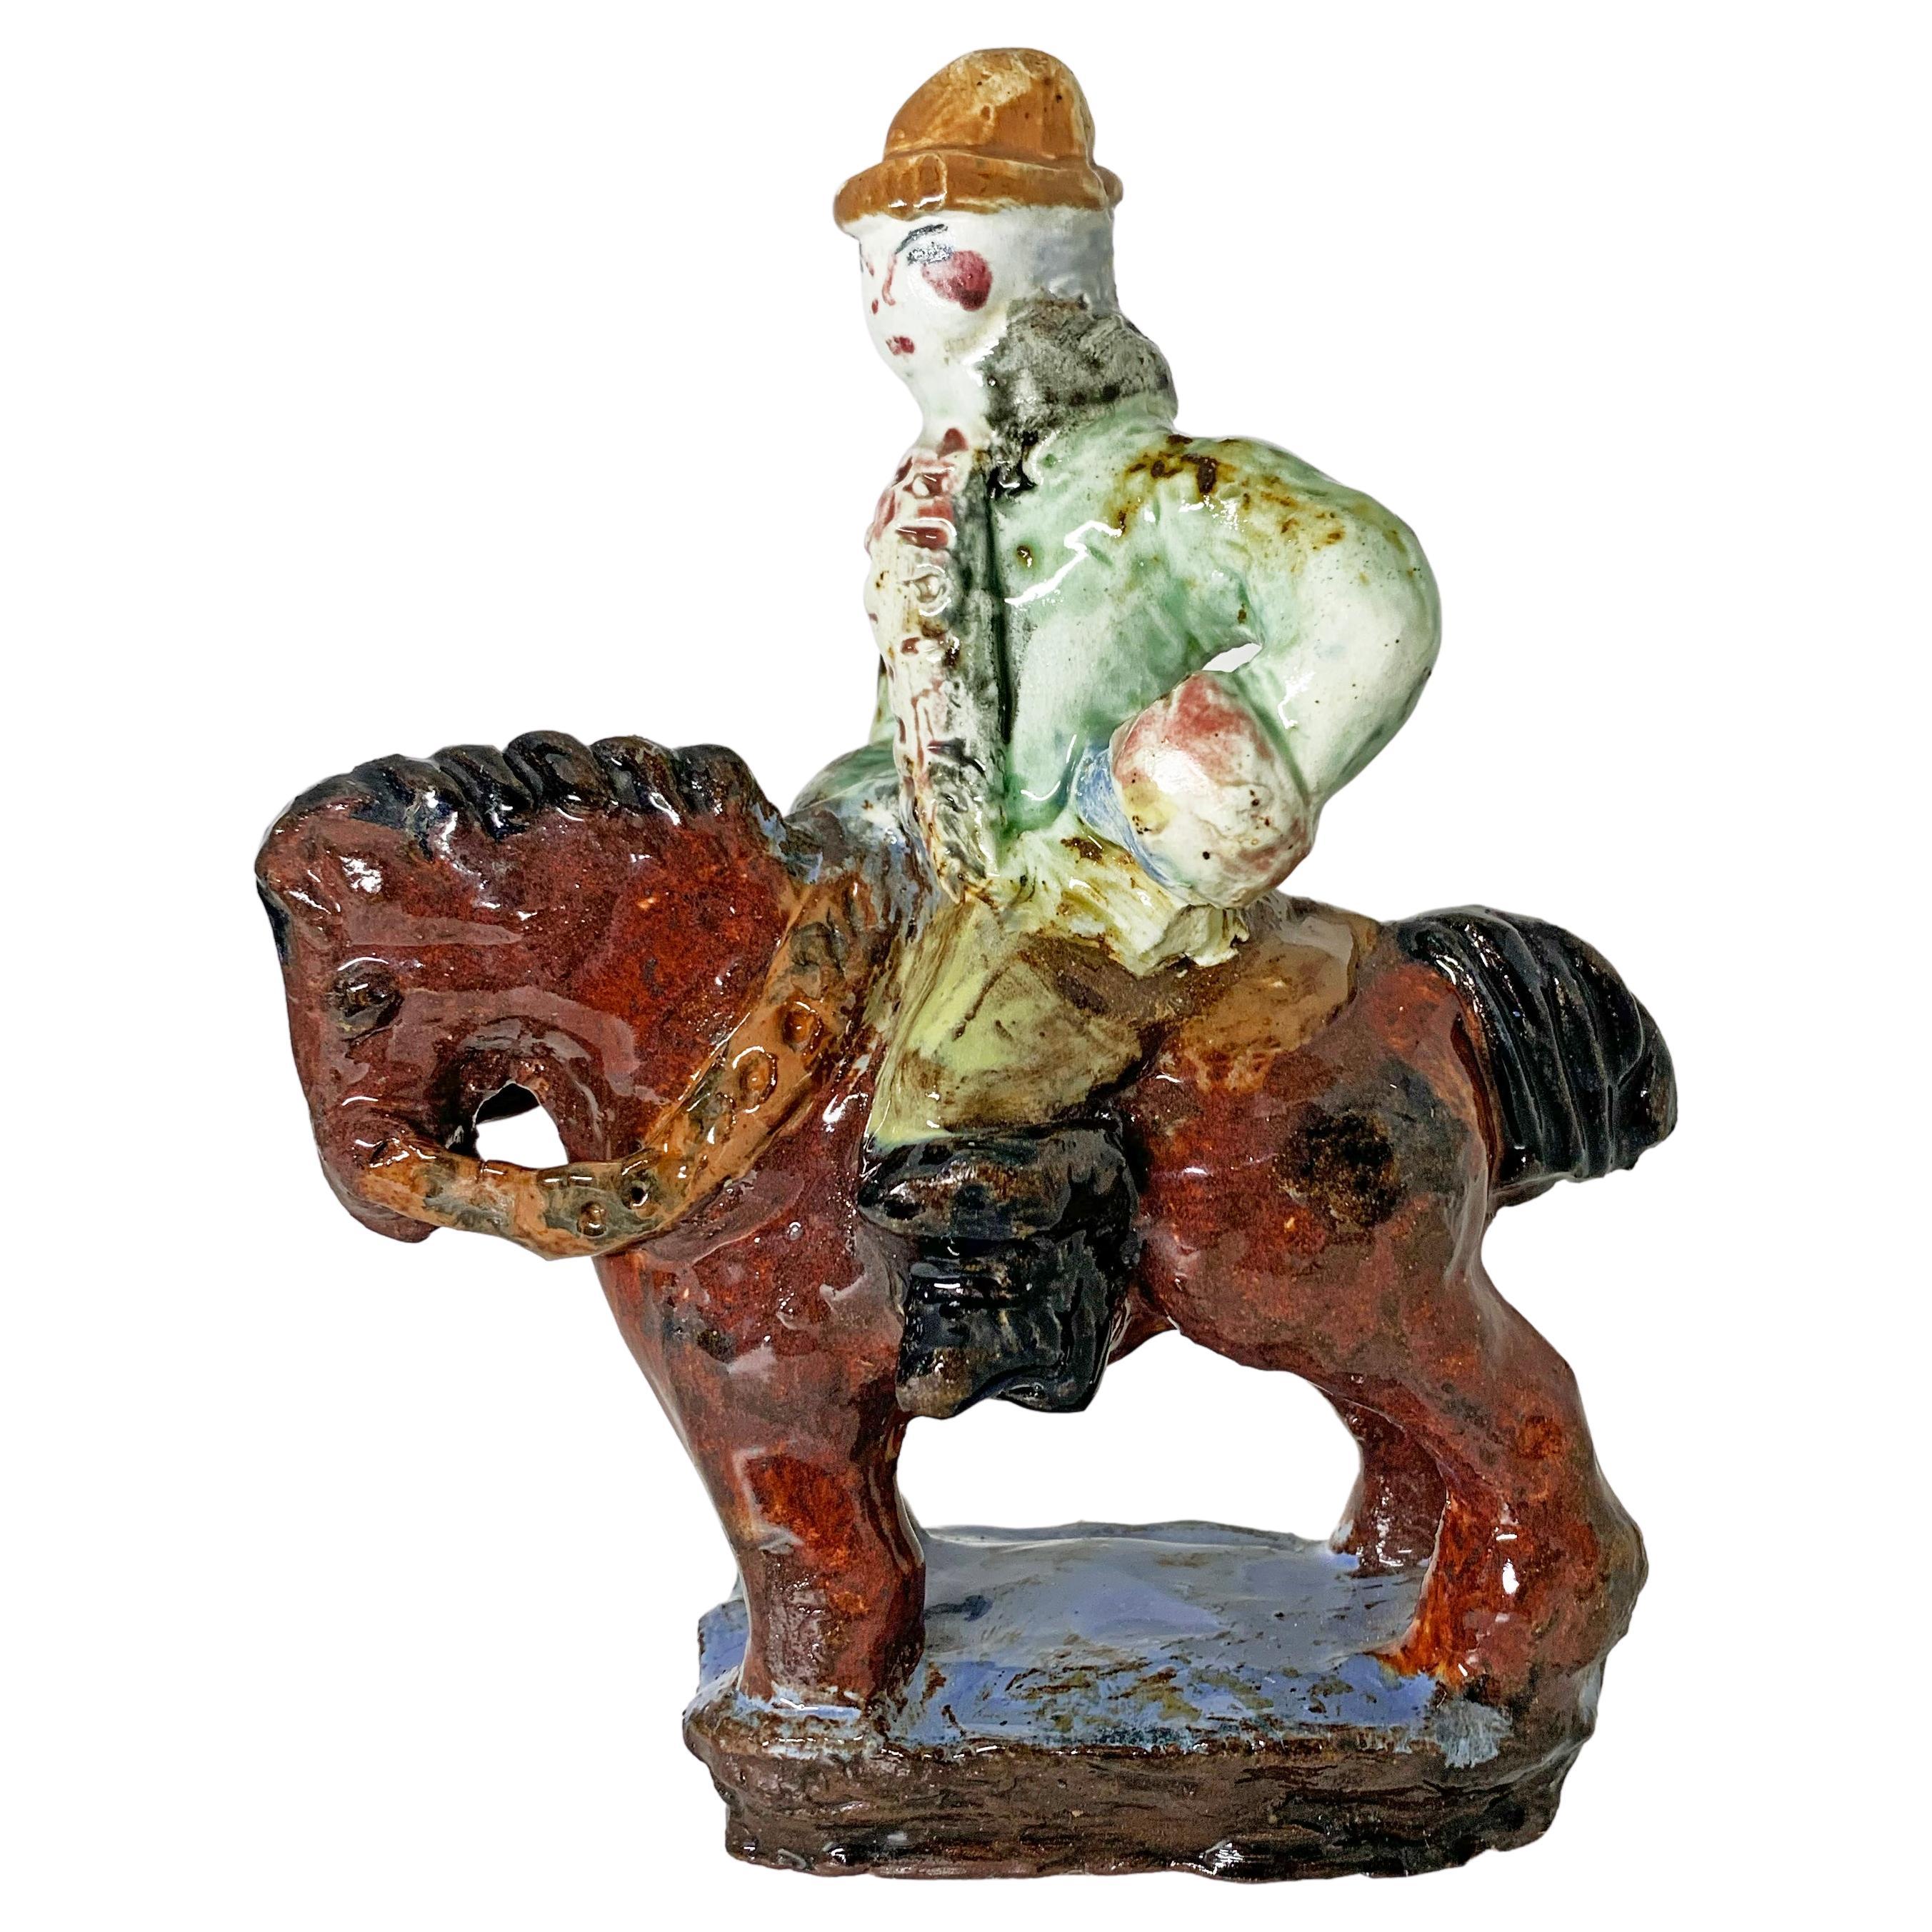 Man on Horseback Ceramic Sculpture, by Reni Schaschi of Weiner Werkstätte